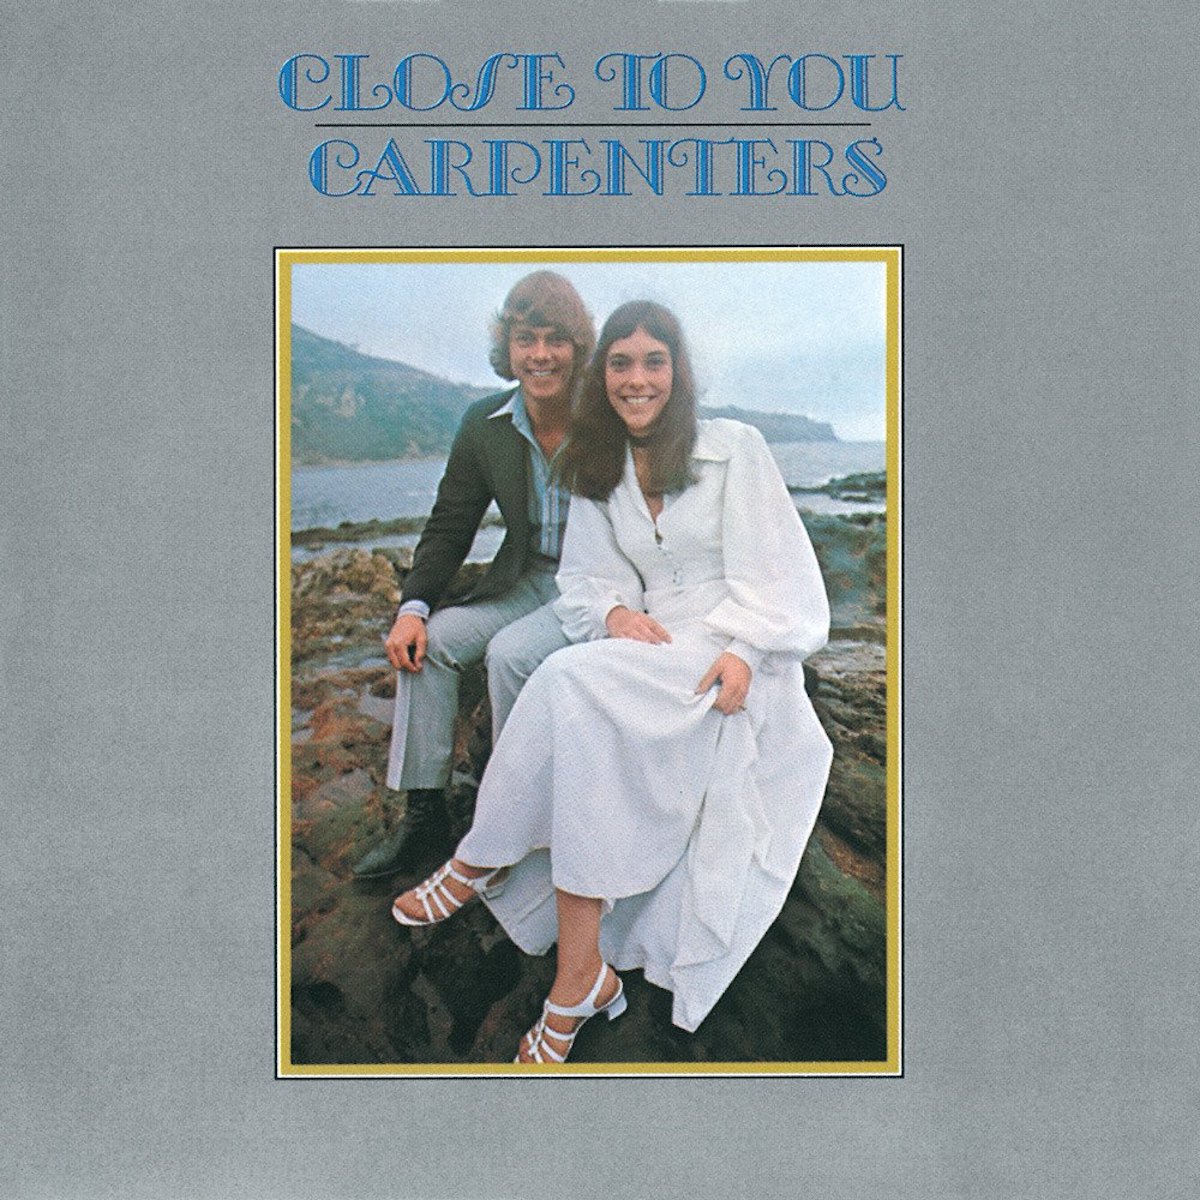 carpenters' album cover for "Close to you"